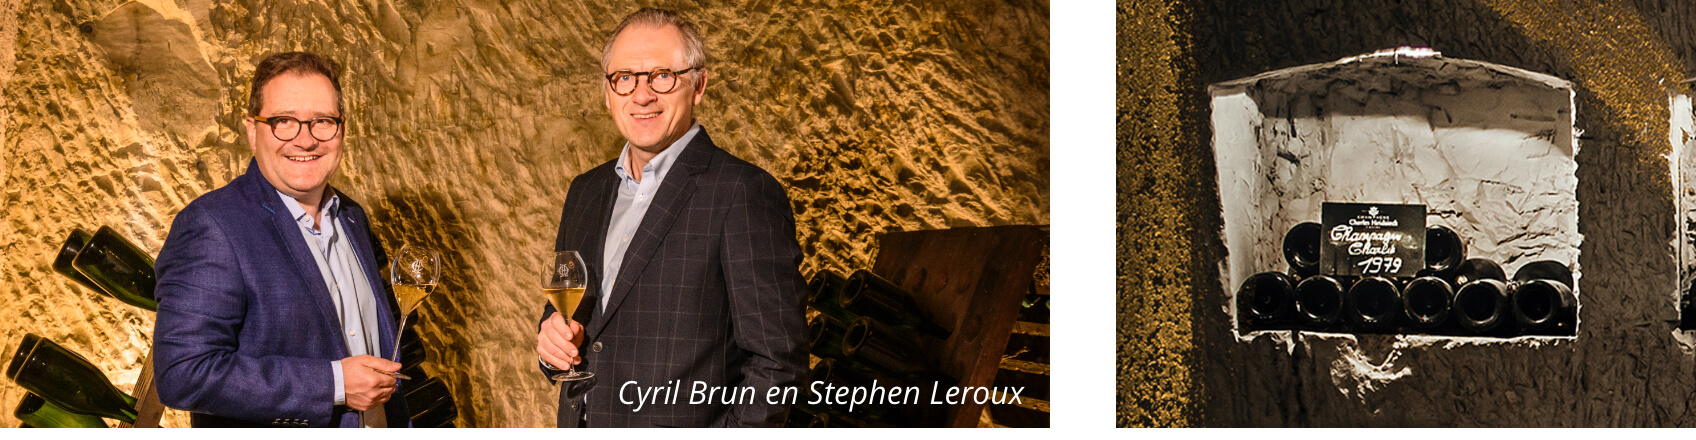 Cyril Brun en Stephen Leroux - Charles Heidsieck